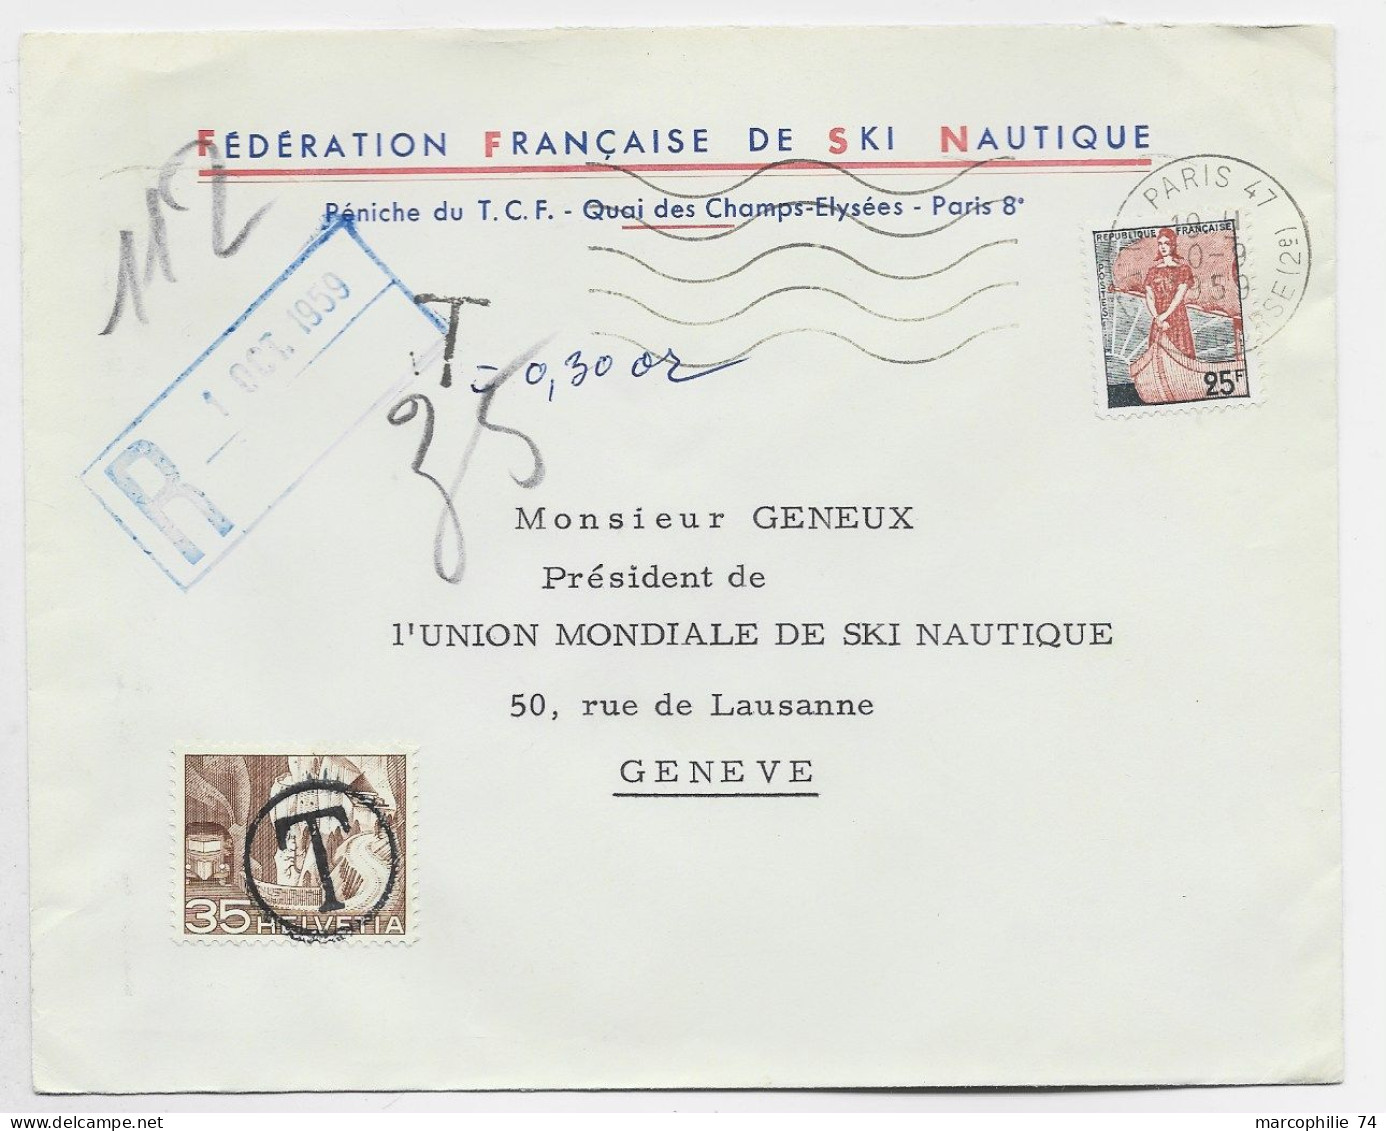 FRANCE LETTRE COVER ENTETE FEDERATION FRANCAISE DE SKI NAUTIQUE MARIANNE A LE NEF 25FR PARIS 1959 POUR SUISSE TAXE 35C - Ski Nautique